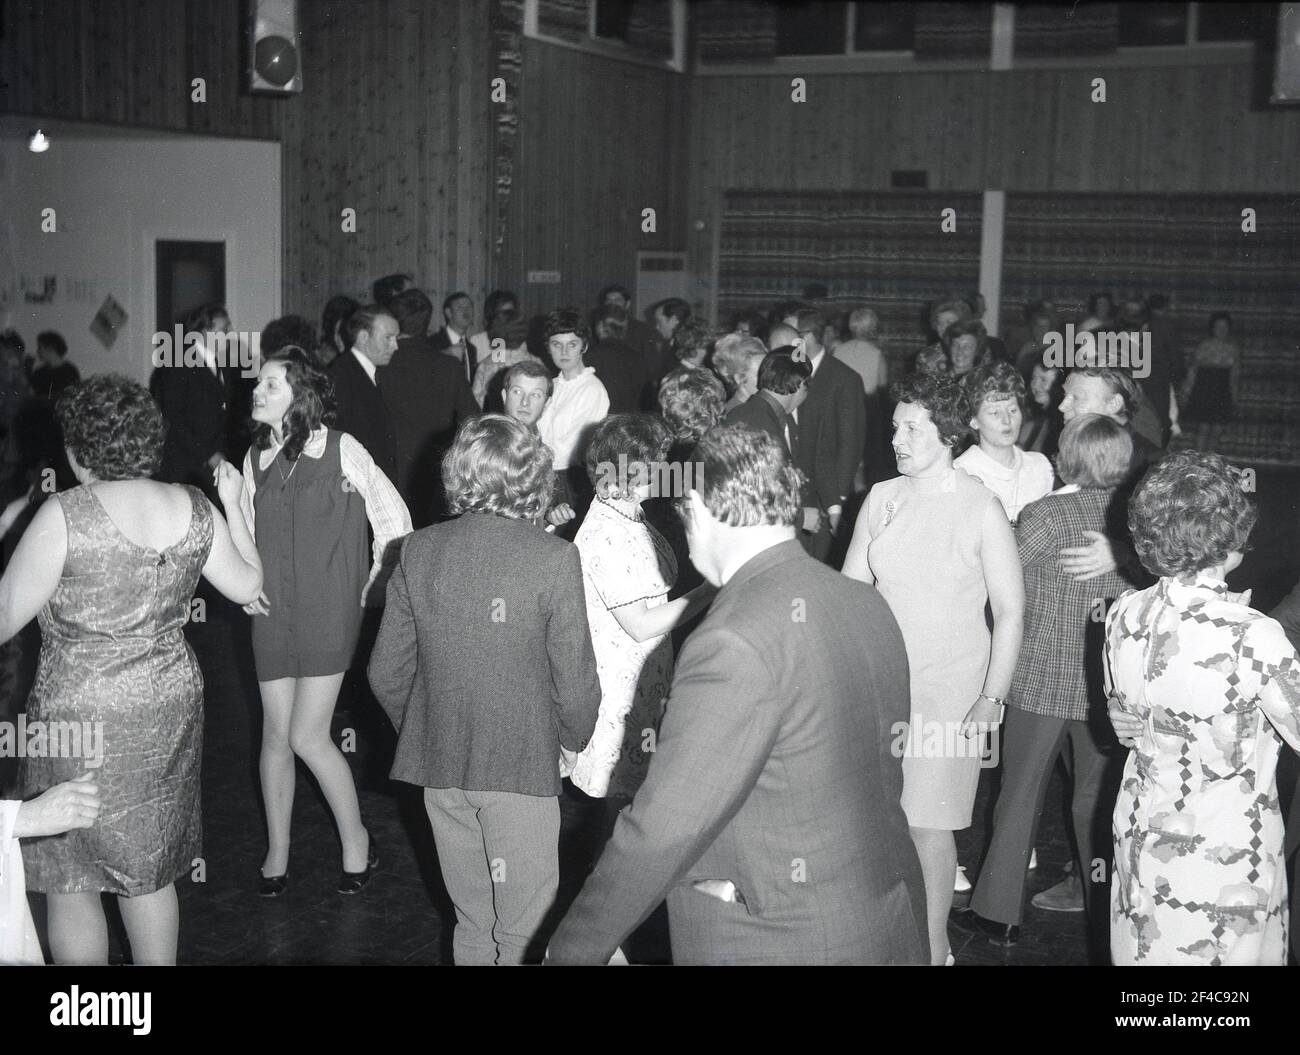 1972, historique, c'est les années 70 et à l'intérieur d'un hôtel de ville communautaire provincial, les gens ayant un 'boogie' comme ils aiment sur la piste de danse à un dîner et danse de district local, Angleterre, Royaume-Uni. Banque D'Images